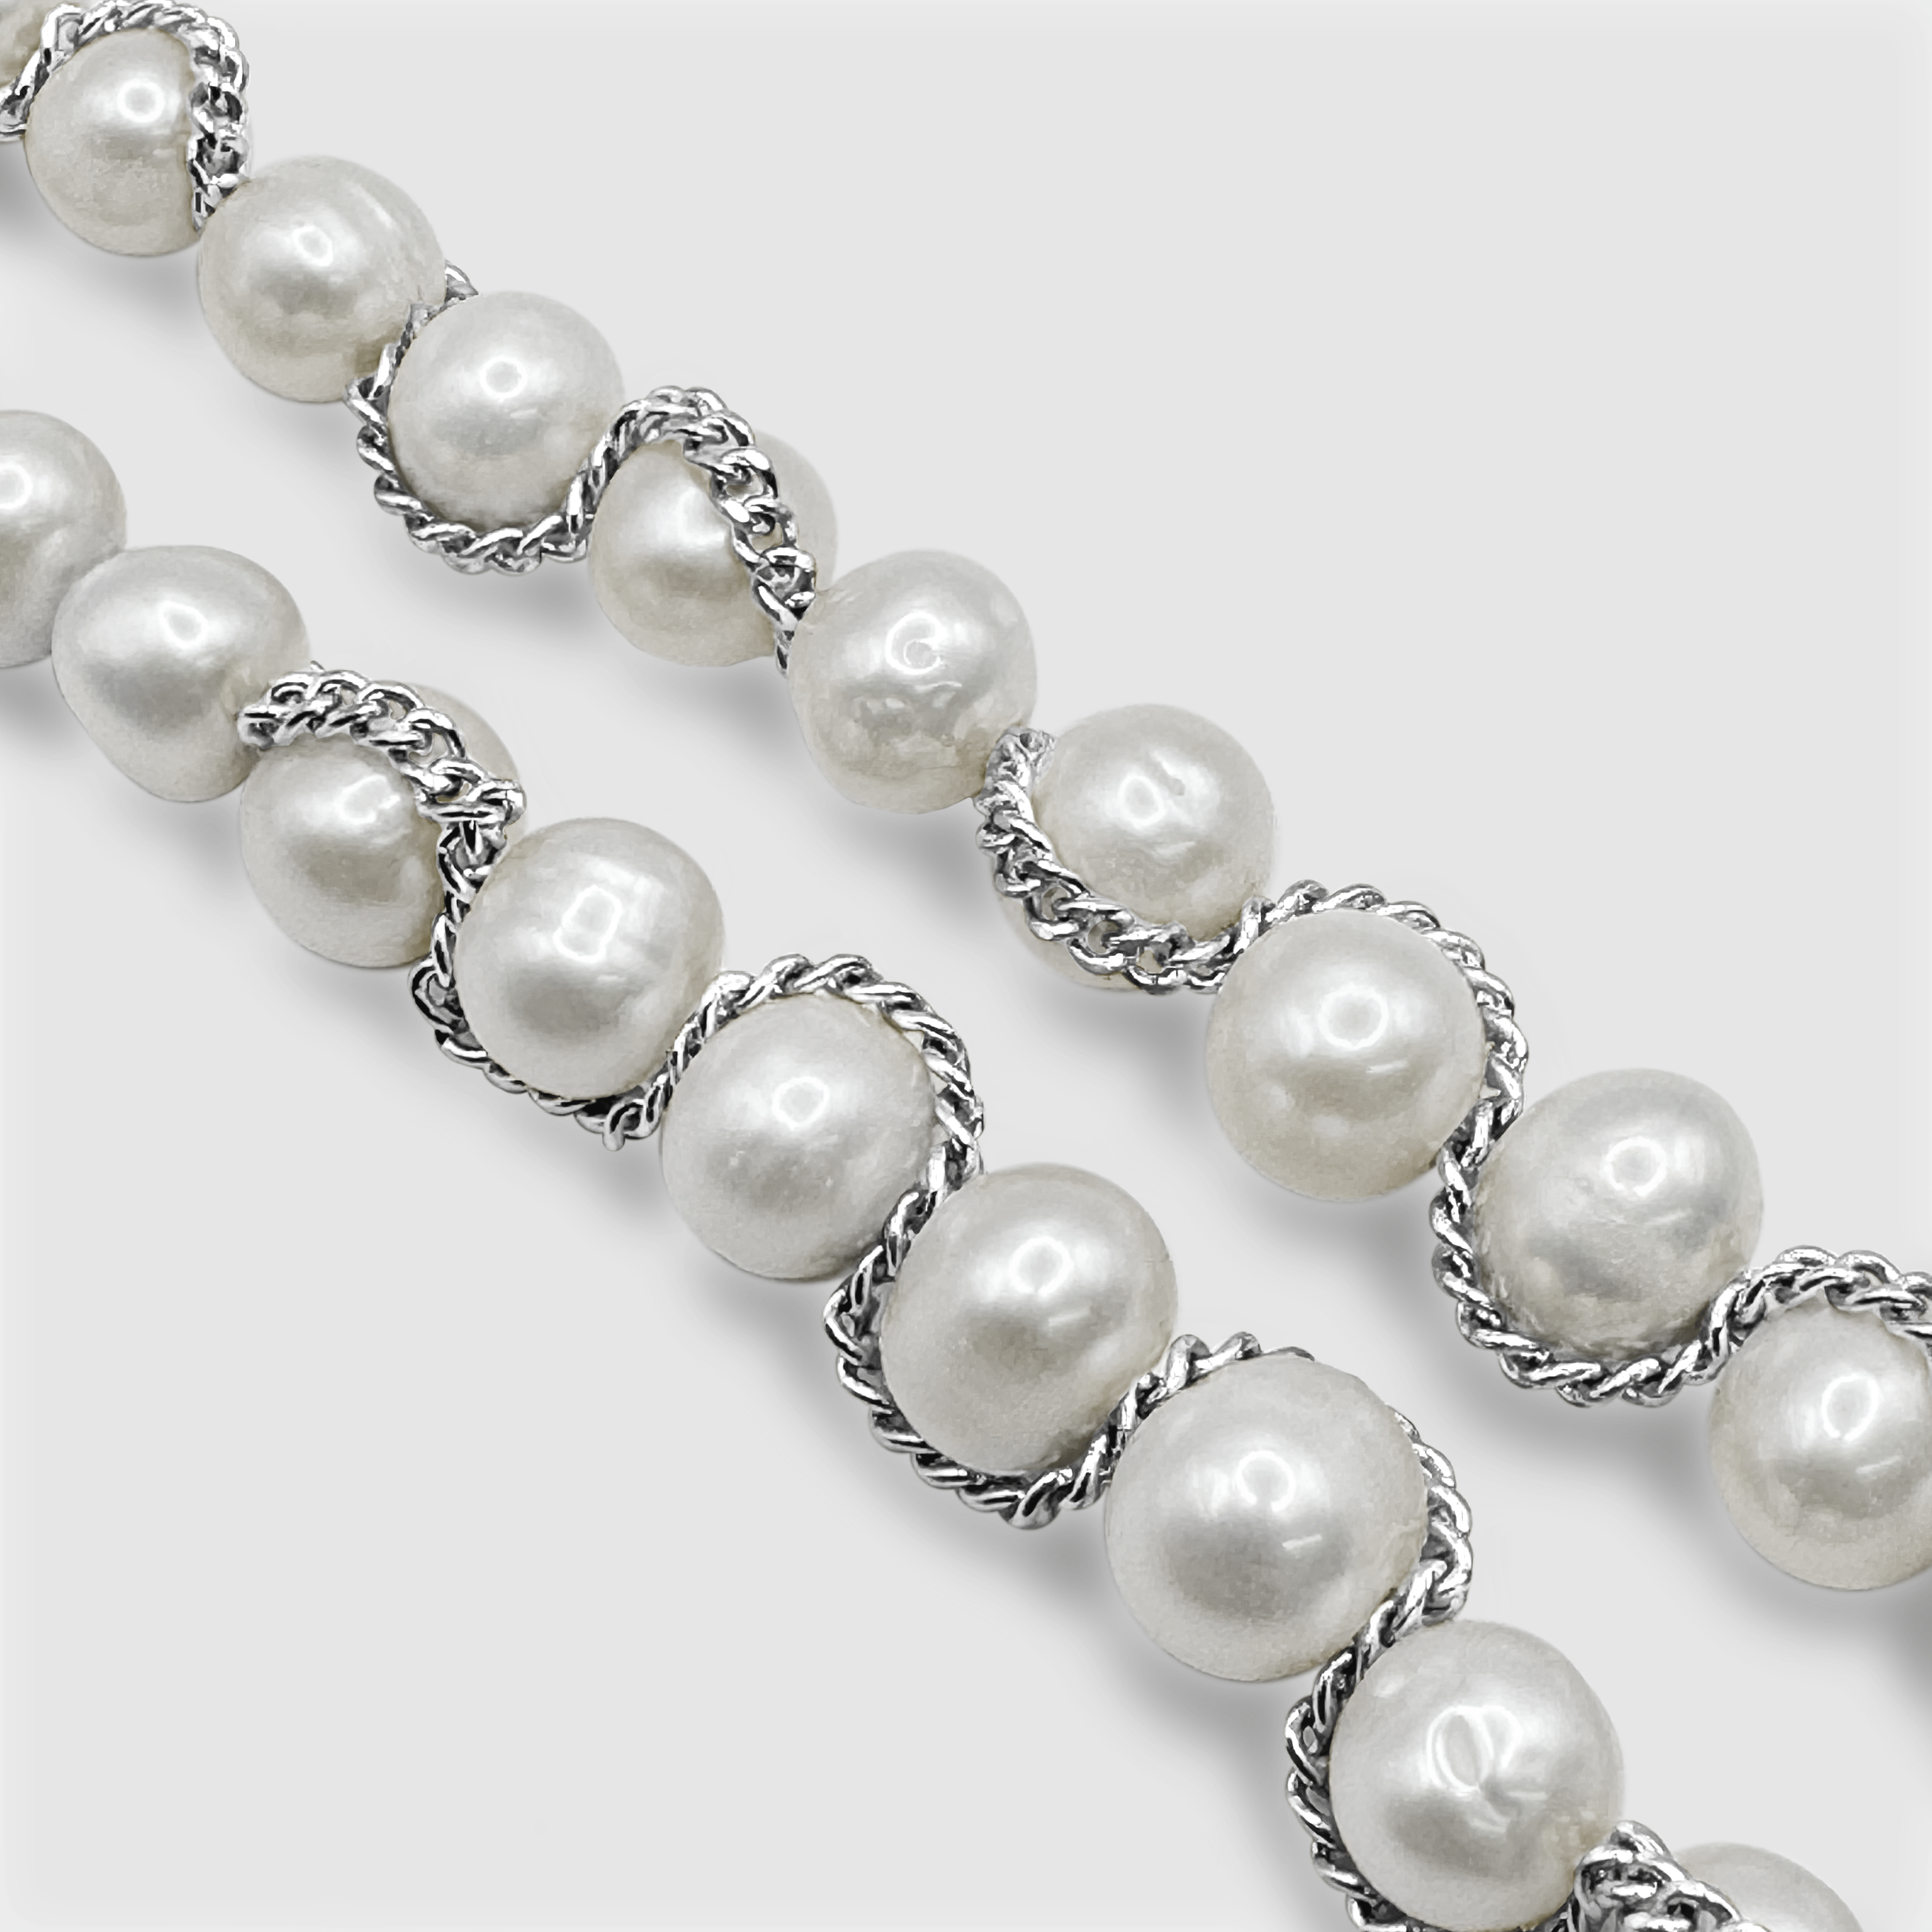 Collier de perles véritables en chaîne (argent)